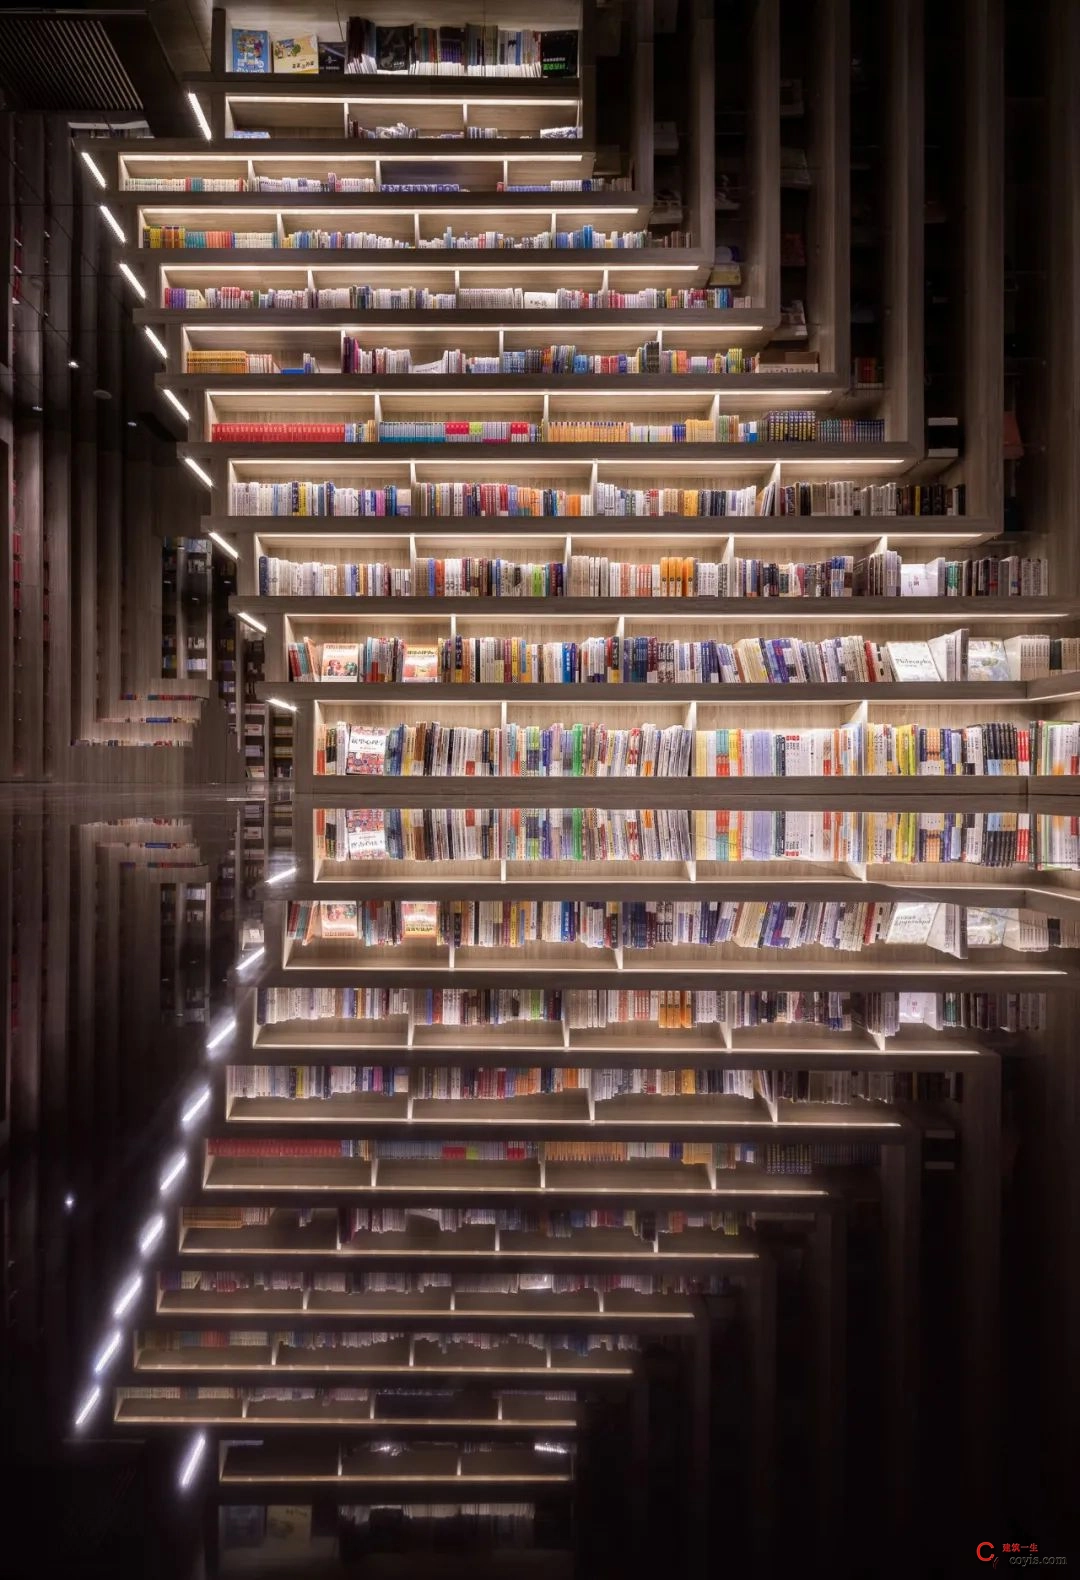 斐波影院X鐘書閣丨一家藏在書店里的電影院，打造出了文藝愛好者的天堂 / 唯想國際